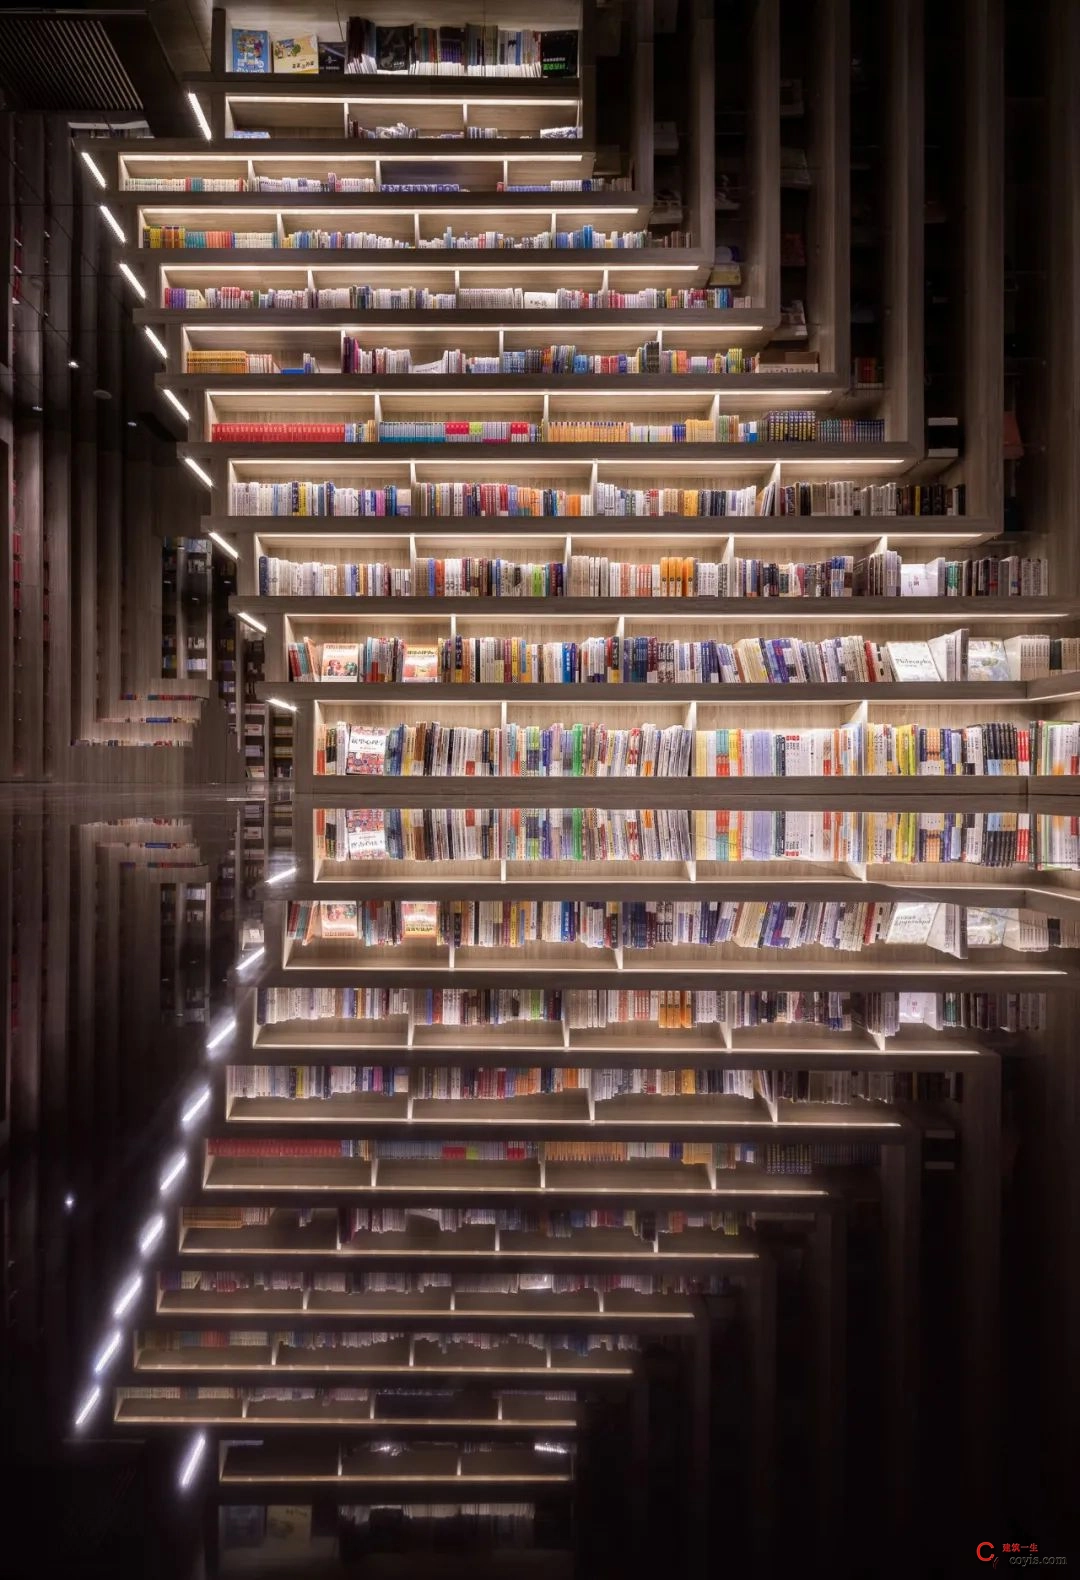 斐波影院X鐘書閣丨一家藏在書店里的電影院，打造出了文藝愛好者的天堂 / 唯想國際